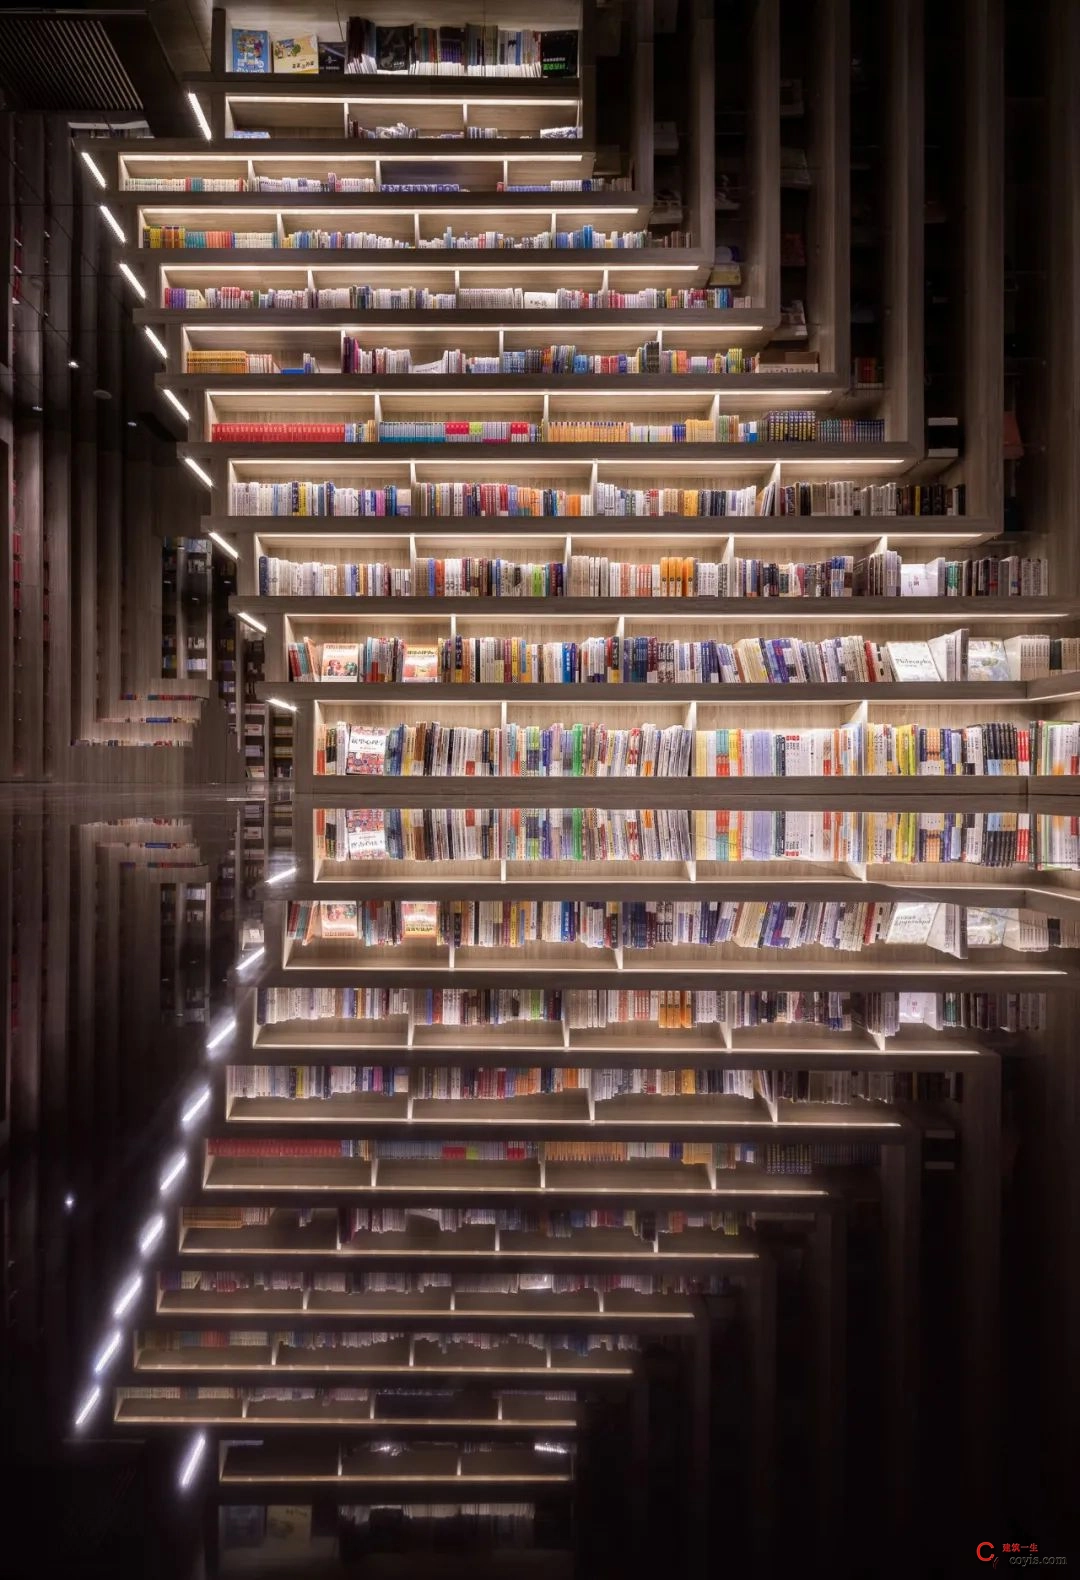 斐波影院X鐘書閣丨一家藏在書店里的電影院，打造出了文藝愛好者的天堂 / 唯想國際